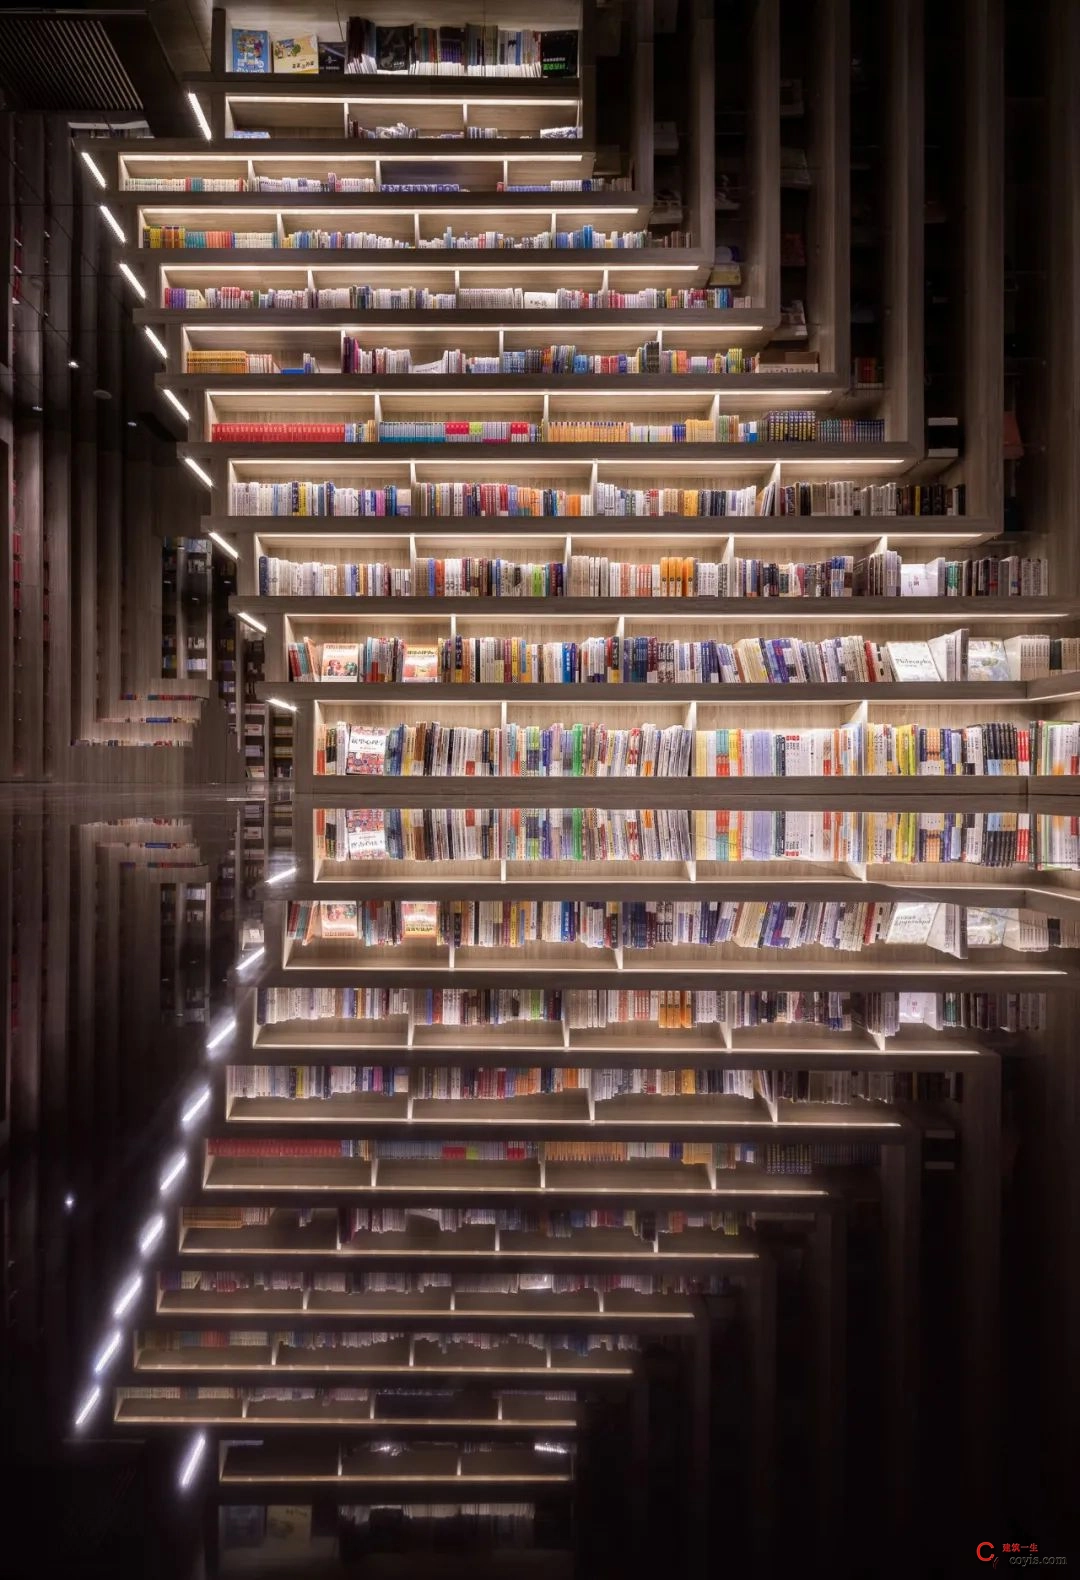 斐波影院X鐘書閣丨一家藏在書店里的電影院，打造出了文藝愛好者的天堂 / 唯想國際